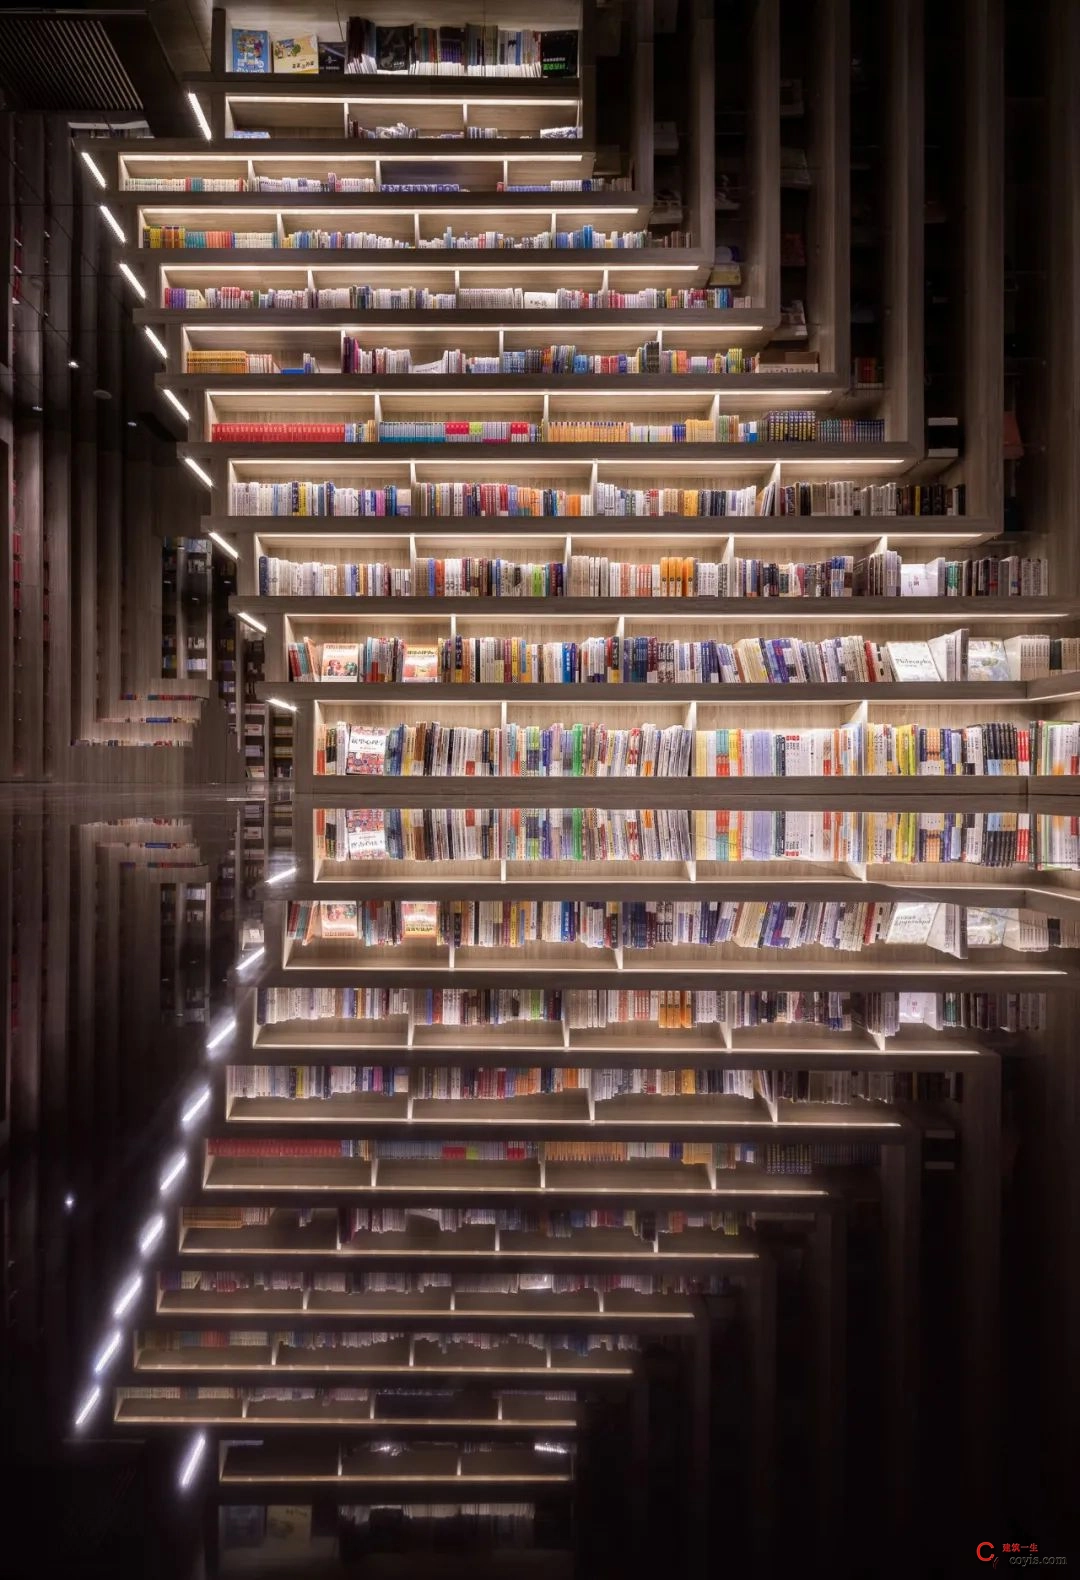 斐波影院X鐘書閣丨一家藏在書店里的電影院，打造出了文藝愛好者的天堂 / 唯想國際